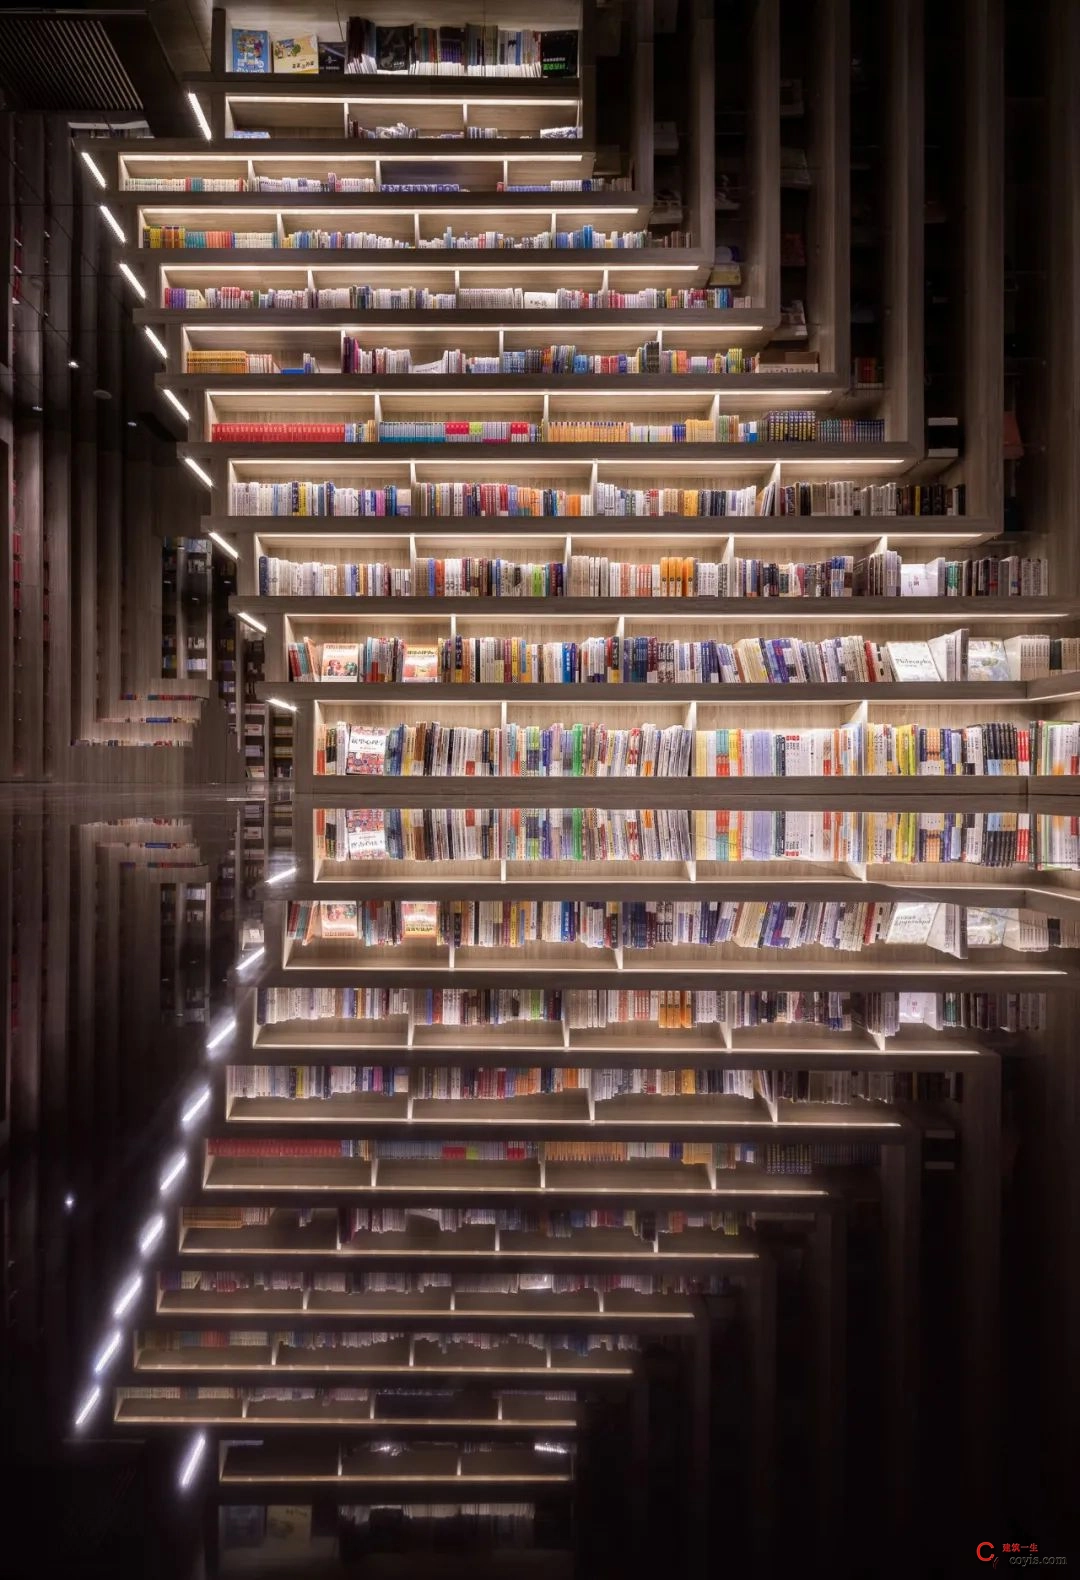 斐波影院X鐘書閣丨一家藏在書店里的電影院，打造出了文藝愛好者的天堂 / 唯想國際